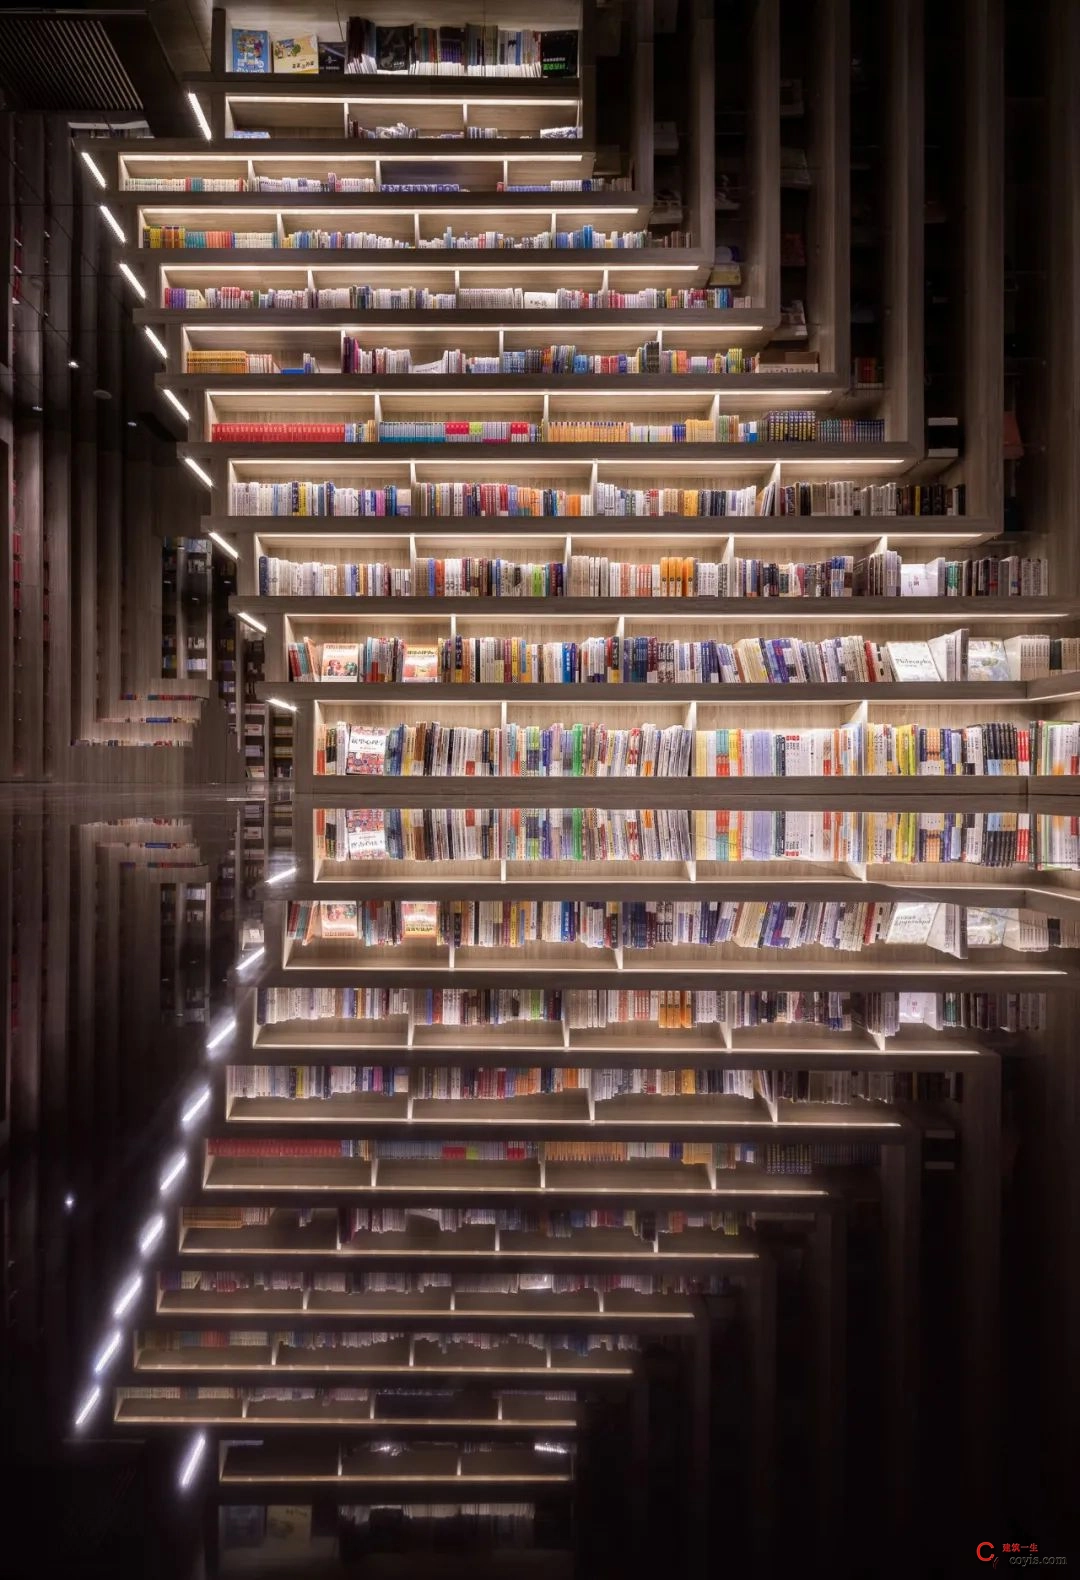 斐波影院X鐘書閣丨一家藏在書店里的電影院，打造出了文藝愛好者的天堂 / 唯想國際